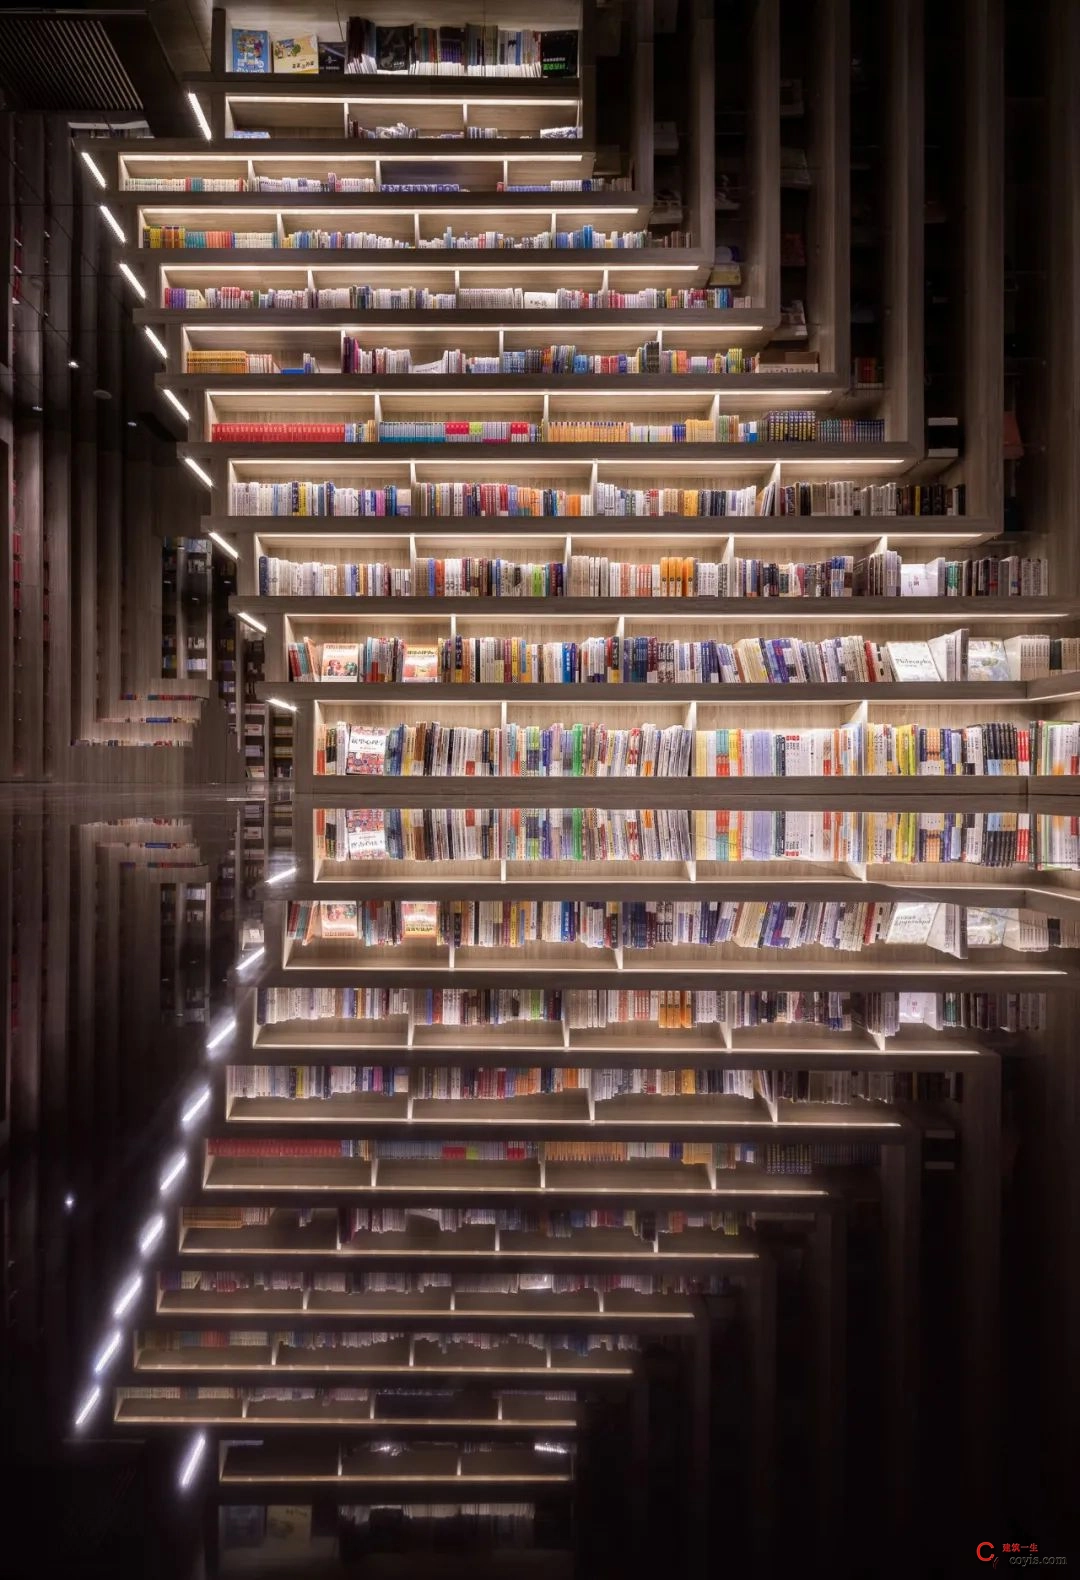 斐波影院X鐘書閣丨一家藏在書店里的電影院，打造出了文藝愛好者的天堂 / 唯想國際